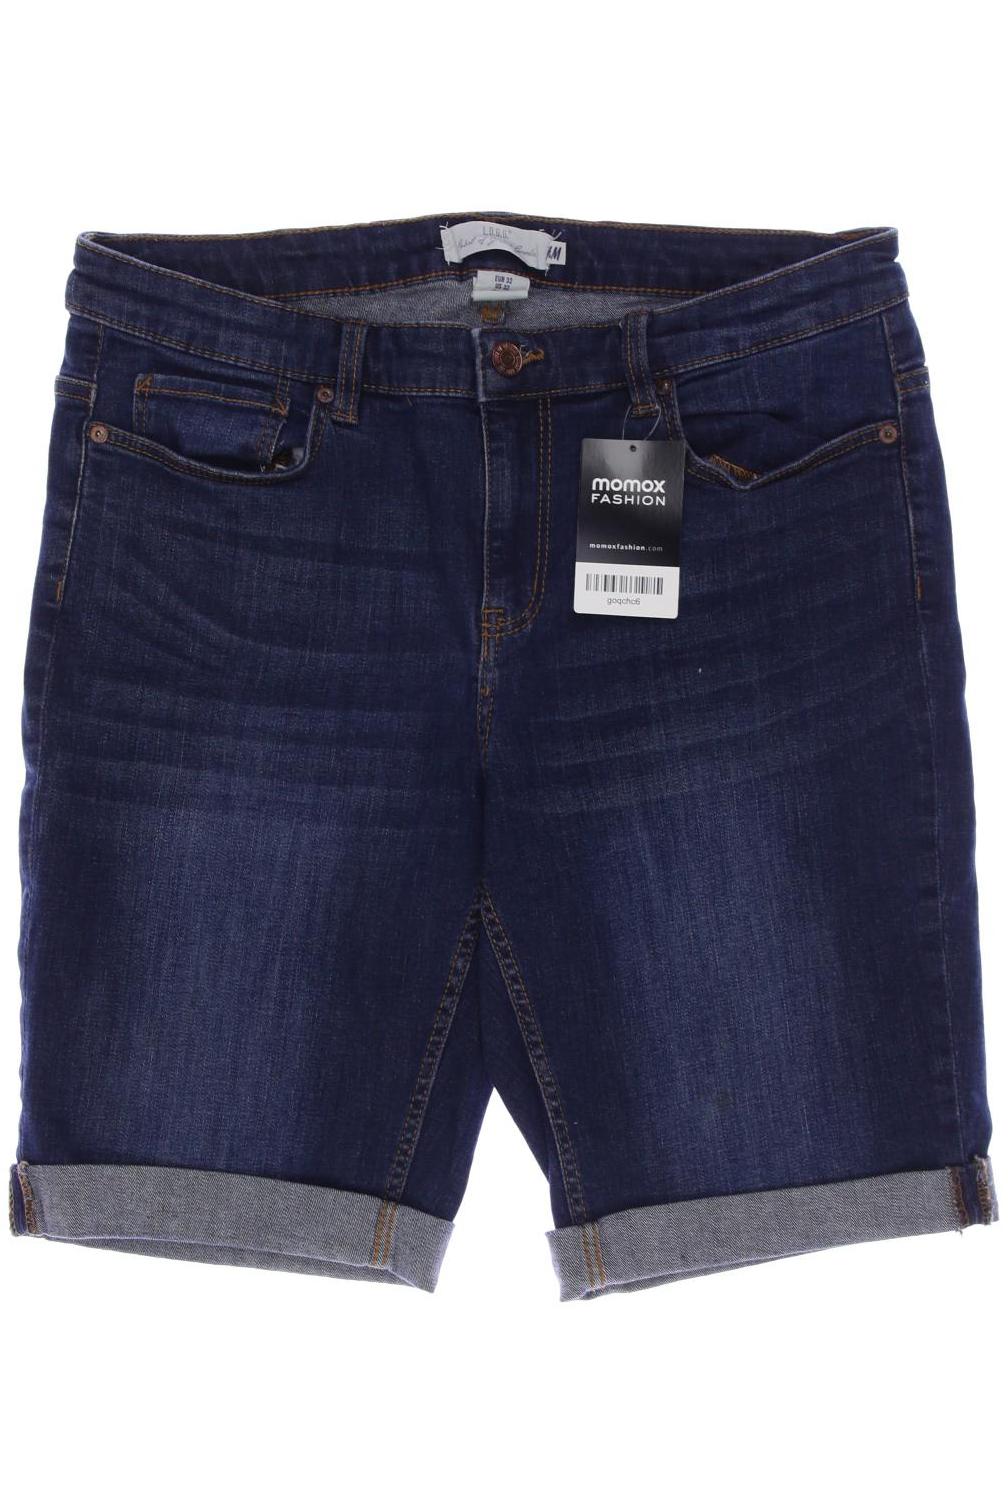 H&M Damen Shorts, marineblau, Gr. 32 von H&M